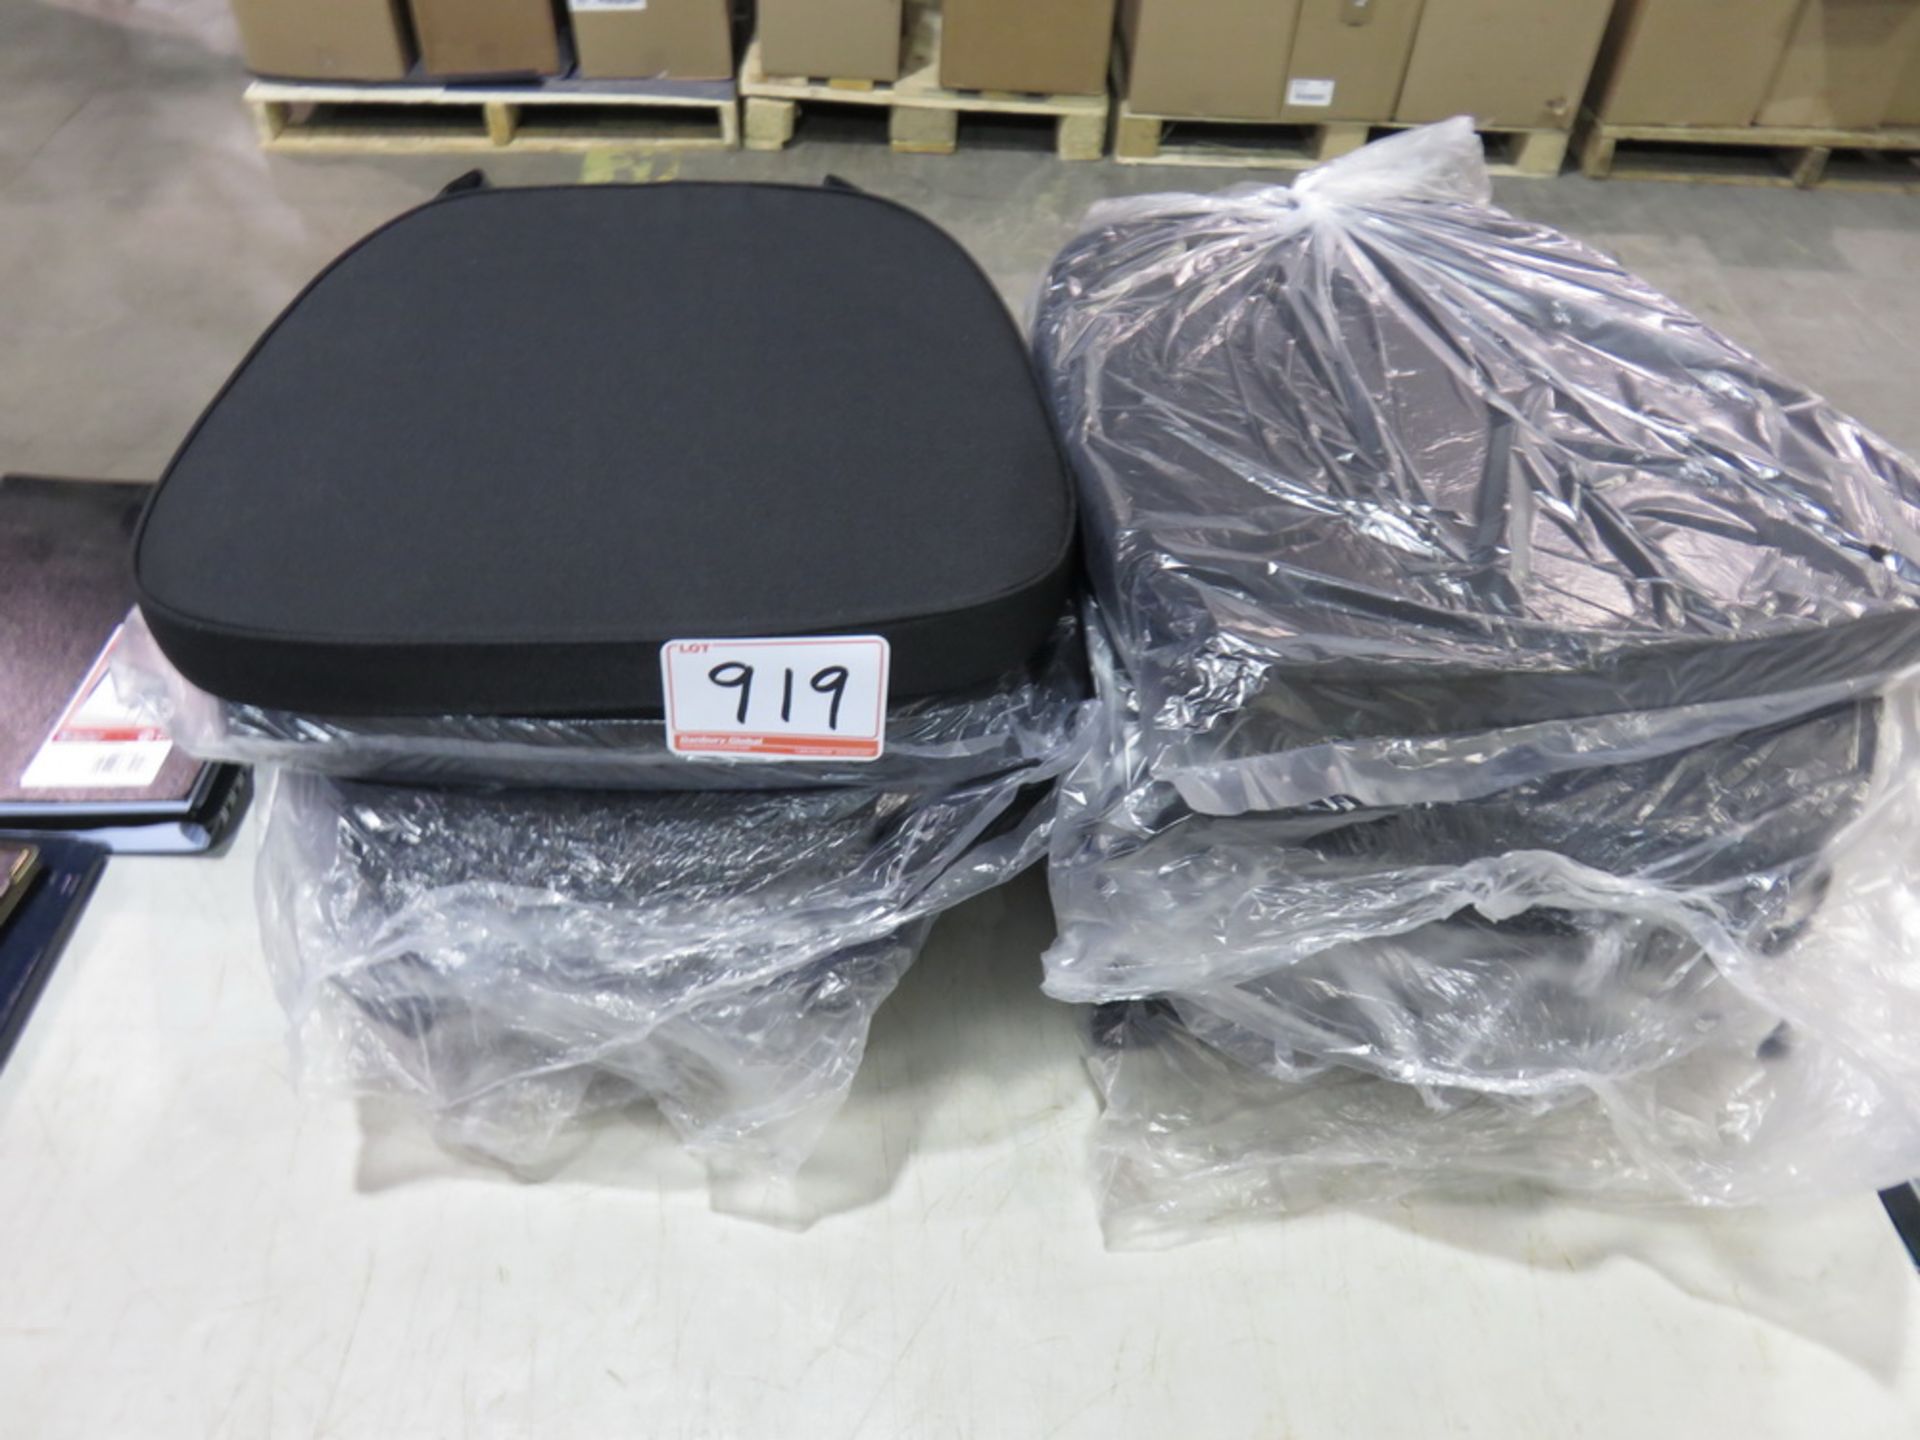 LOT - BLACK FABRIC 15 X 16 X 1 3/4 APPROX SEAT CUSHIONS